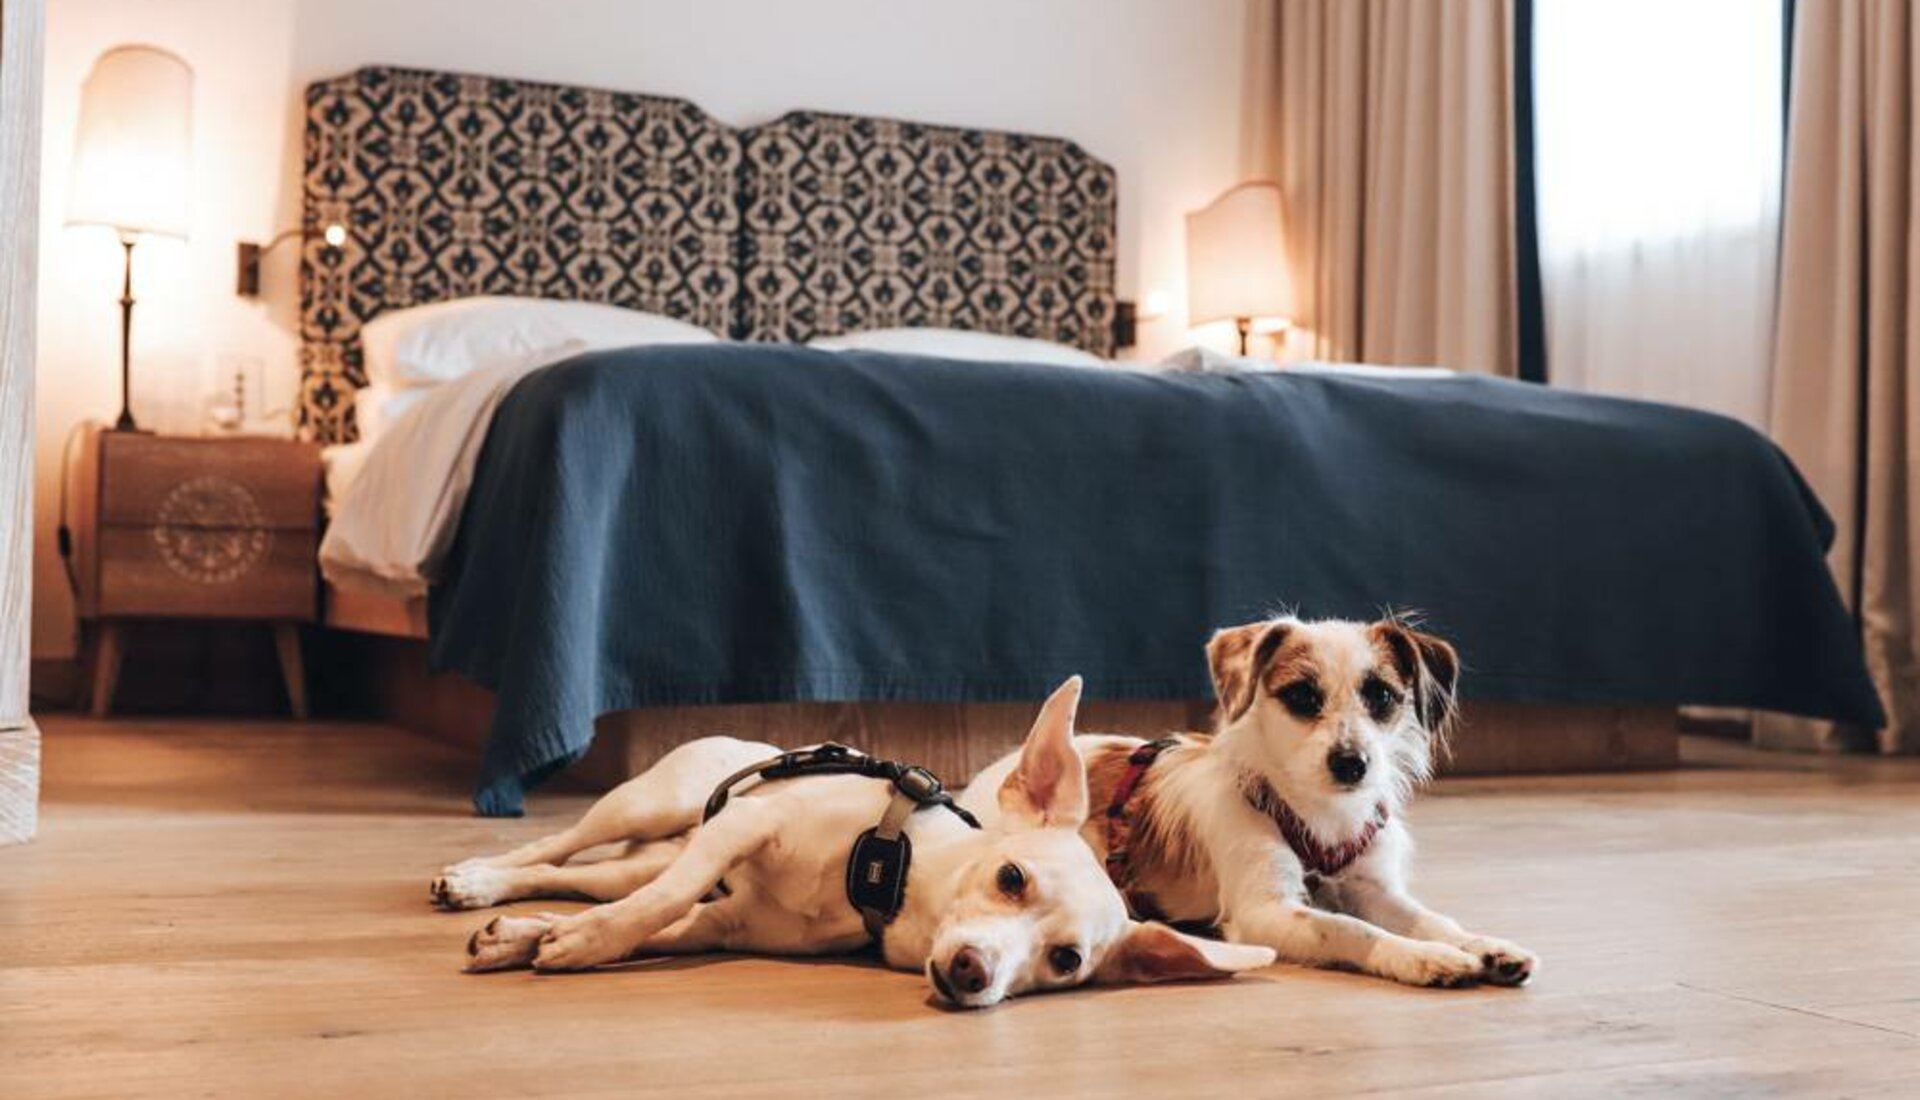 Dog-friendly hotel Carinthia, holiday with dog Austria